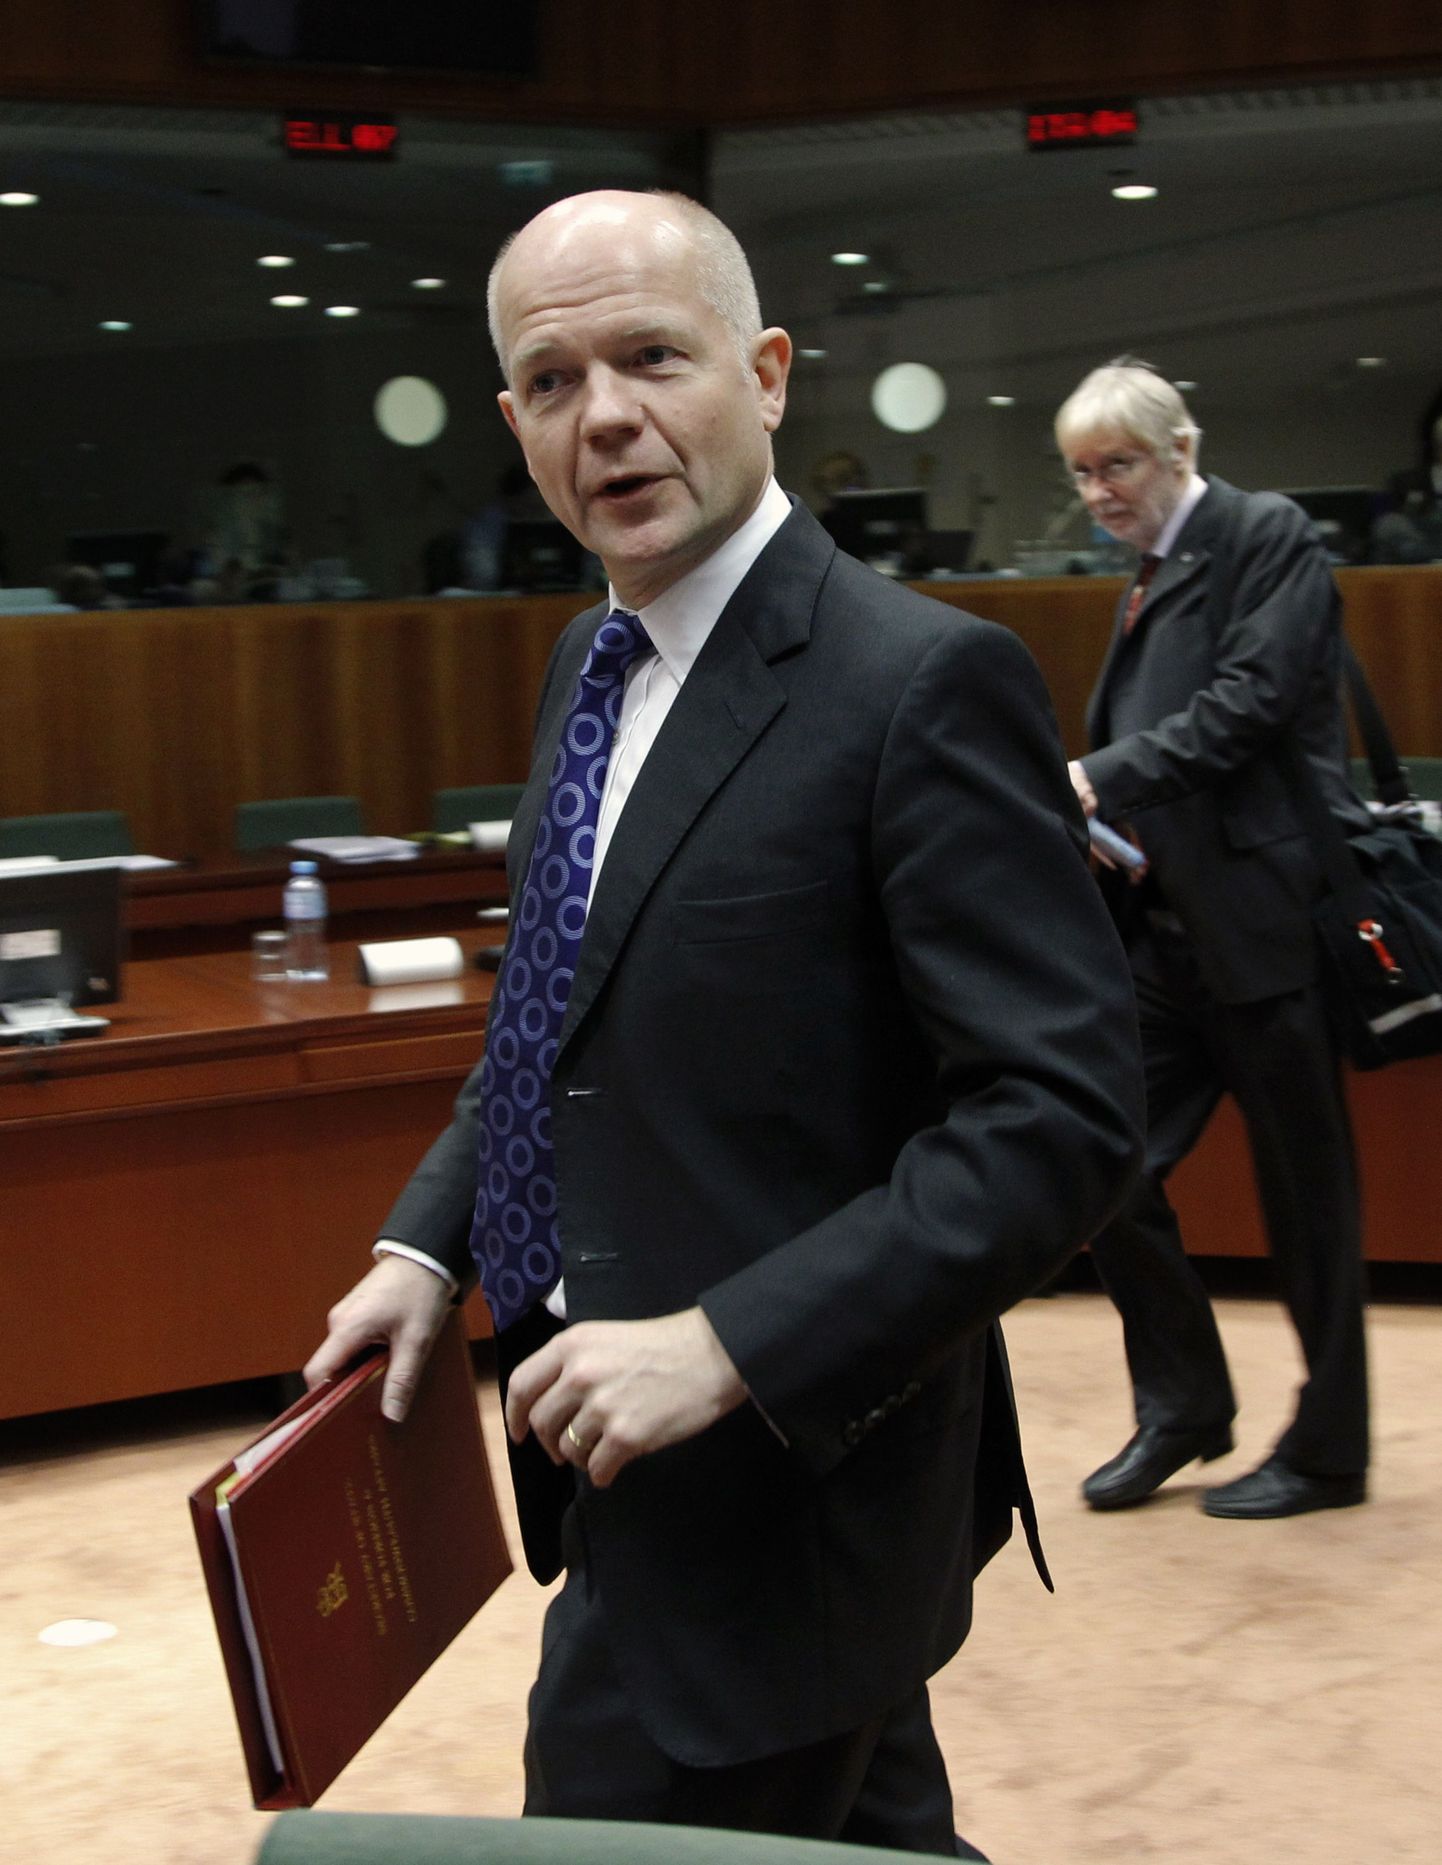 Briti välisminister William Hague tänasele ELi kohtumisele saabumas.